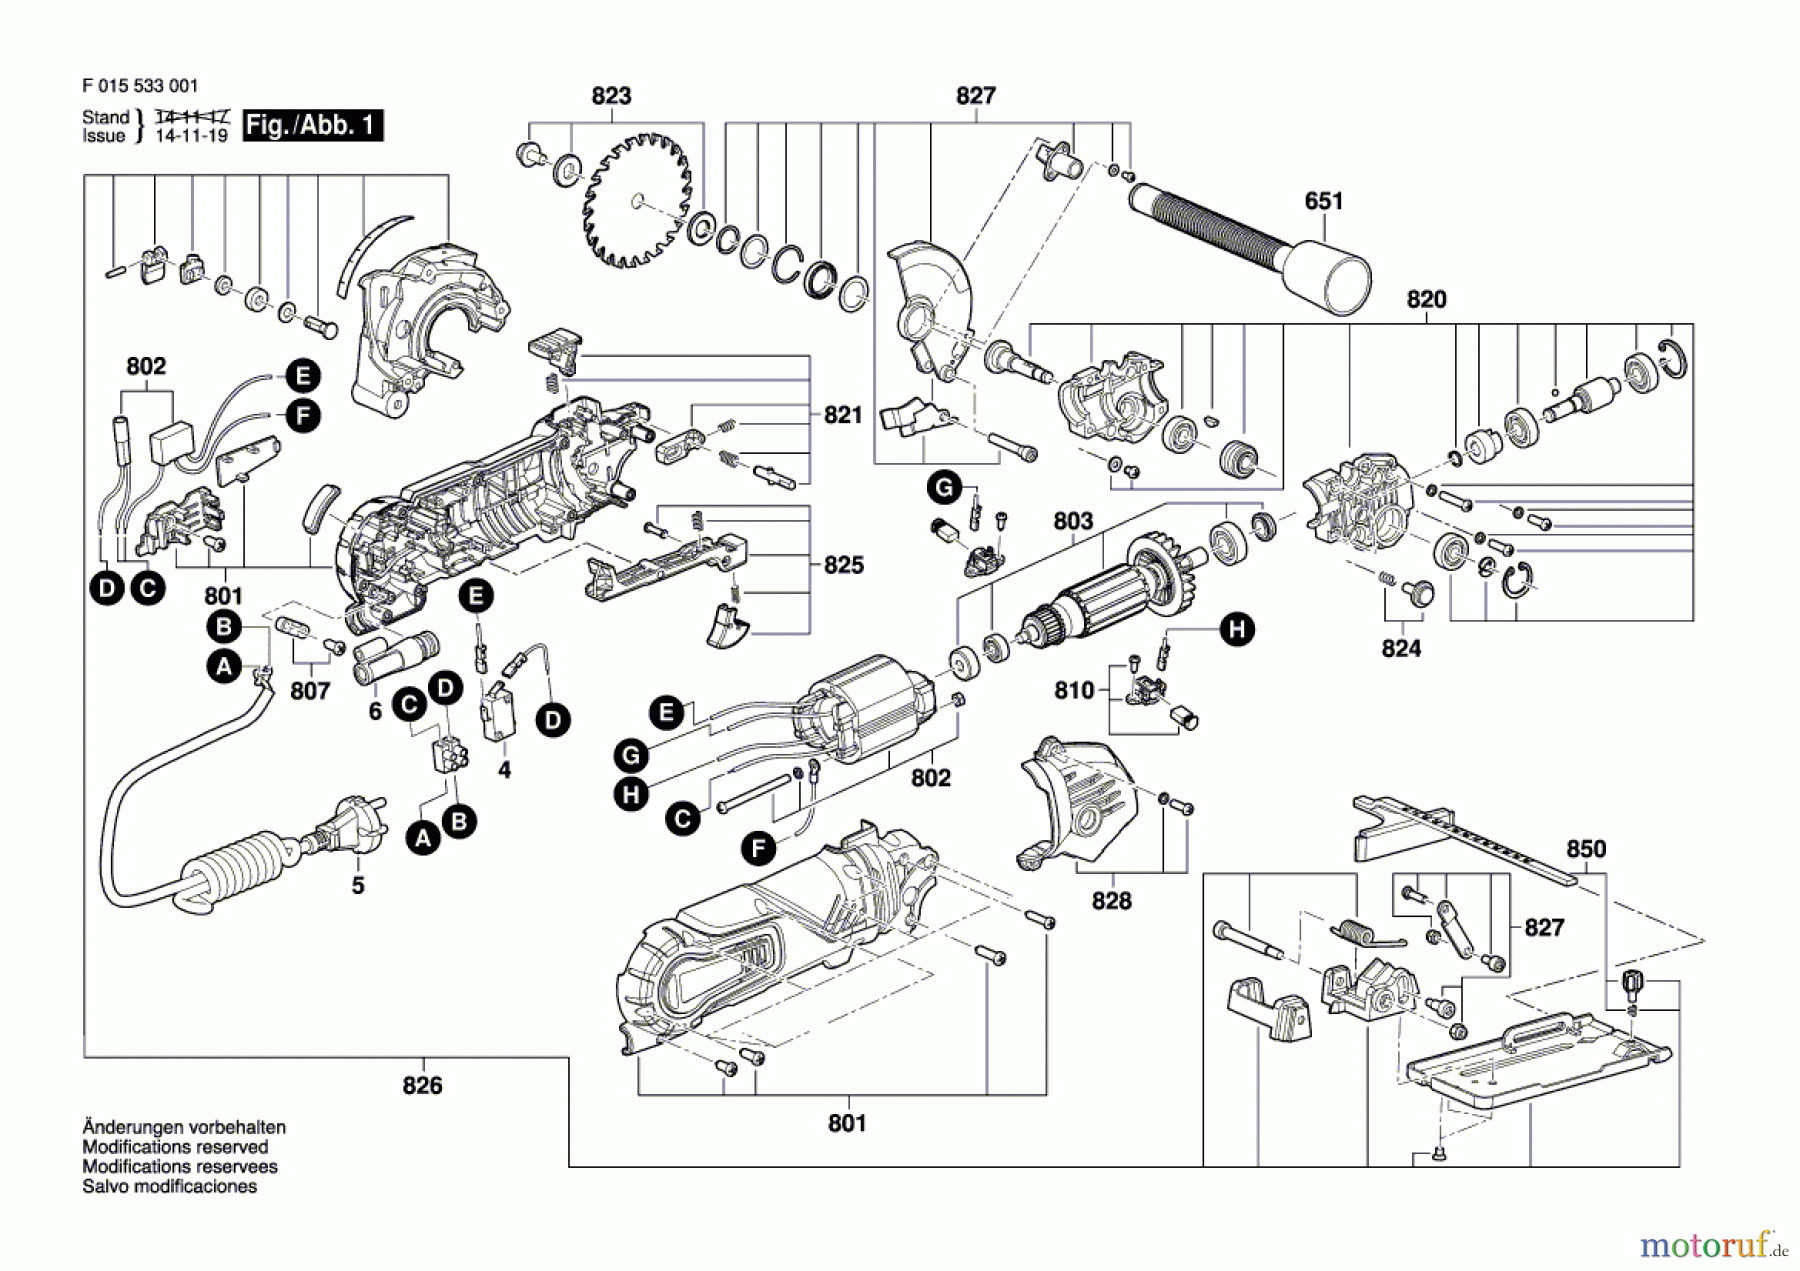  Bosch Werkzeug Handkreissäge 5330 Seite 1